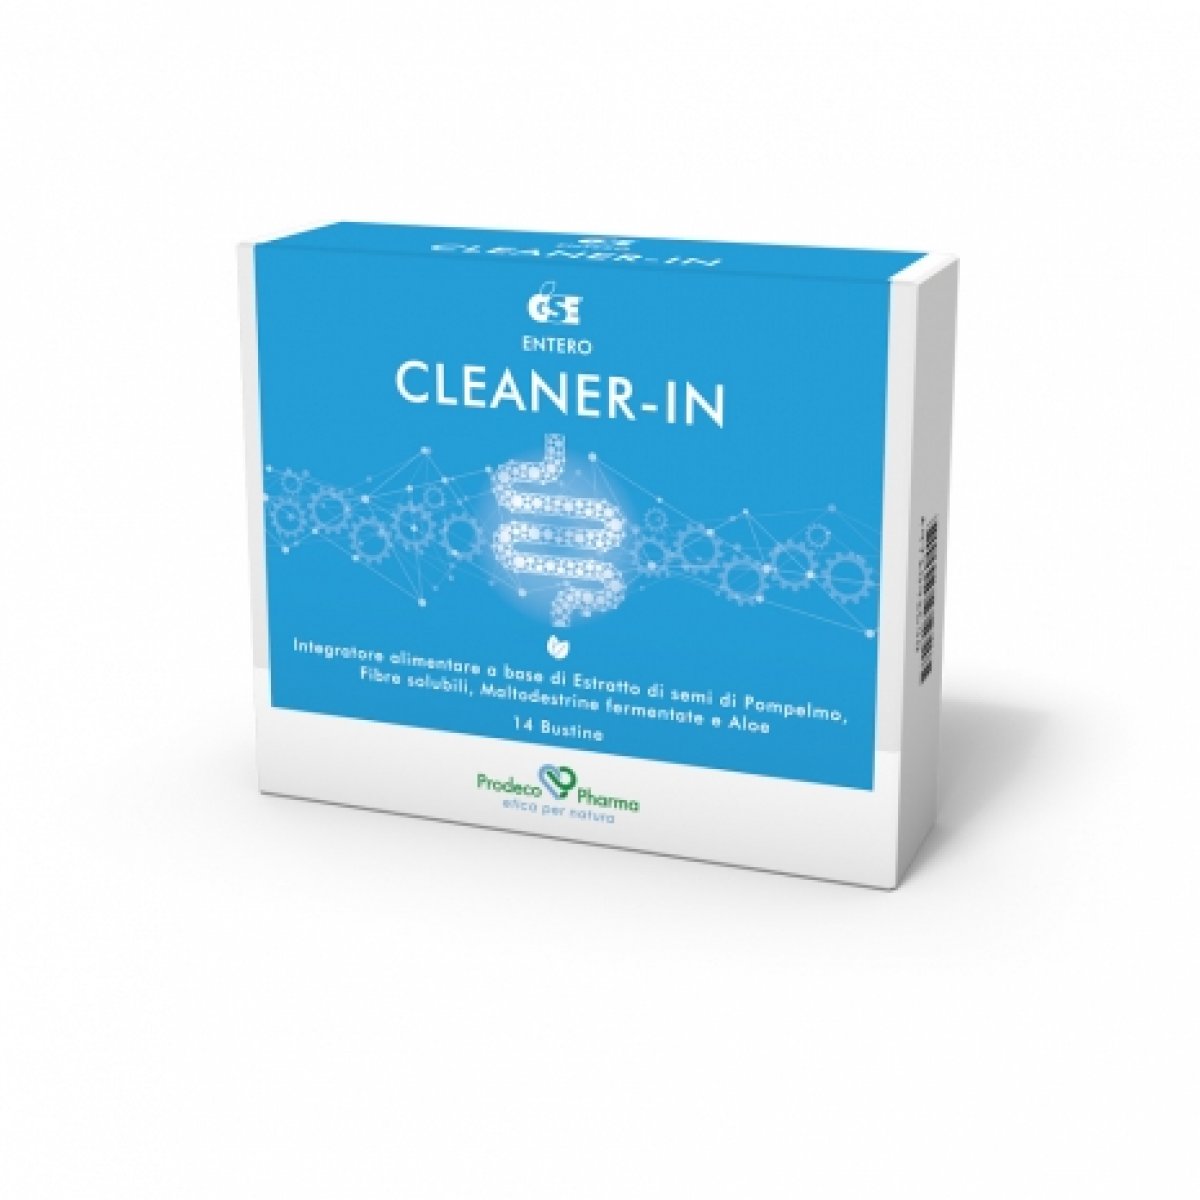 GSE CLEANER-IN - Prodeco Pharma Integratore 100% naturale, formulato con funzionali utili per purificare l'organismo attraverso la pulizia intestinale, la protezione della mucosa e il ripristino dell'equilibrio intestinale. Confezione da 14 bustine.